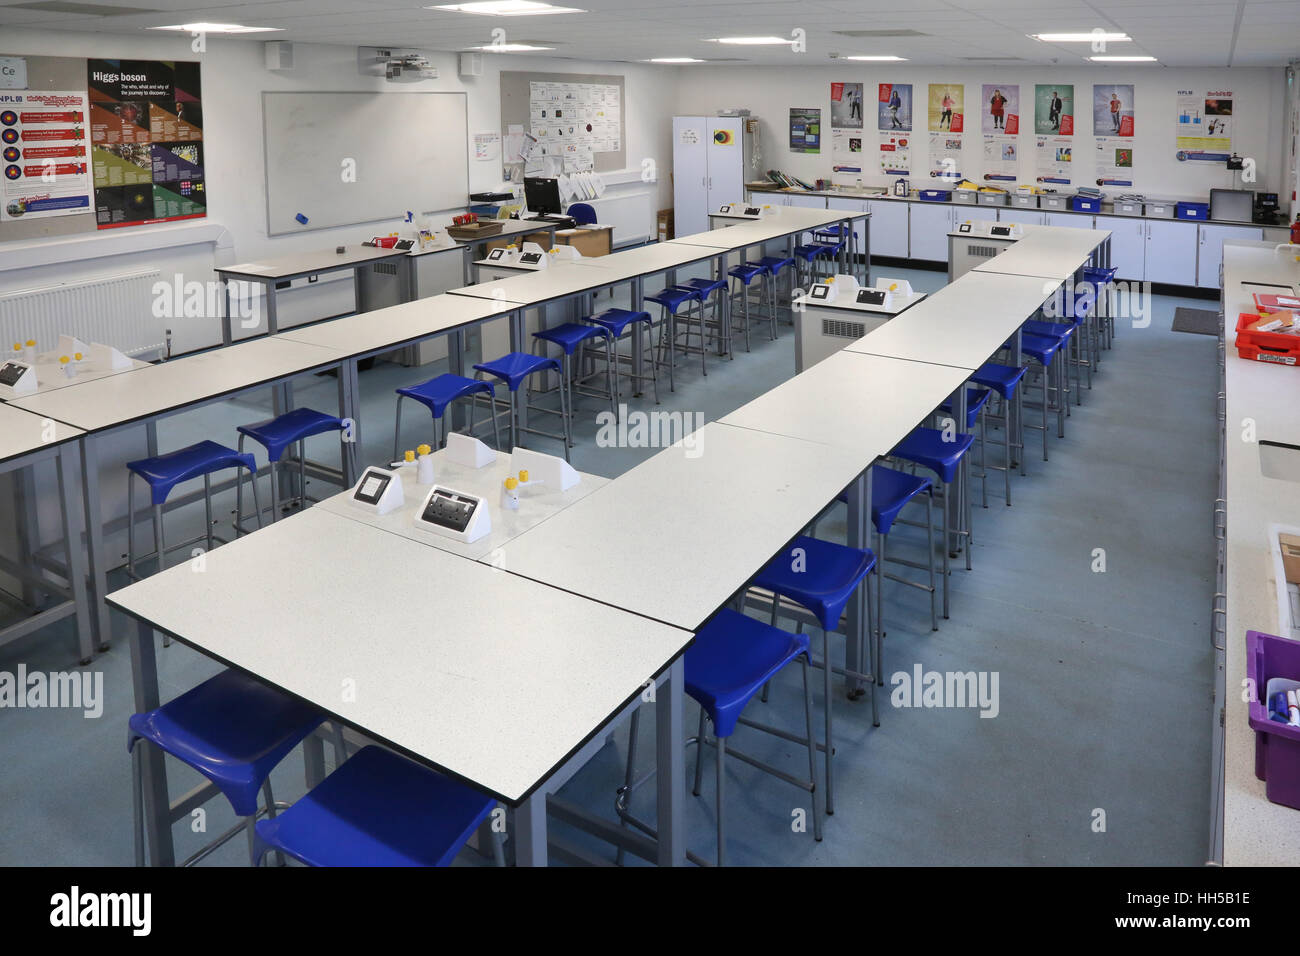 Scuola di scienza in una nuova scuola secondaria del Regno Unito. Mostra banchi da laboratorio, sgabelli e attrezzature scientifiche. Vuoto, senza alunni. Foto Stock